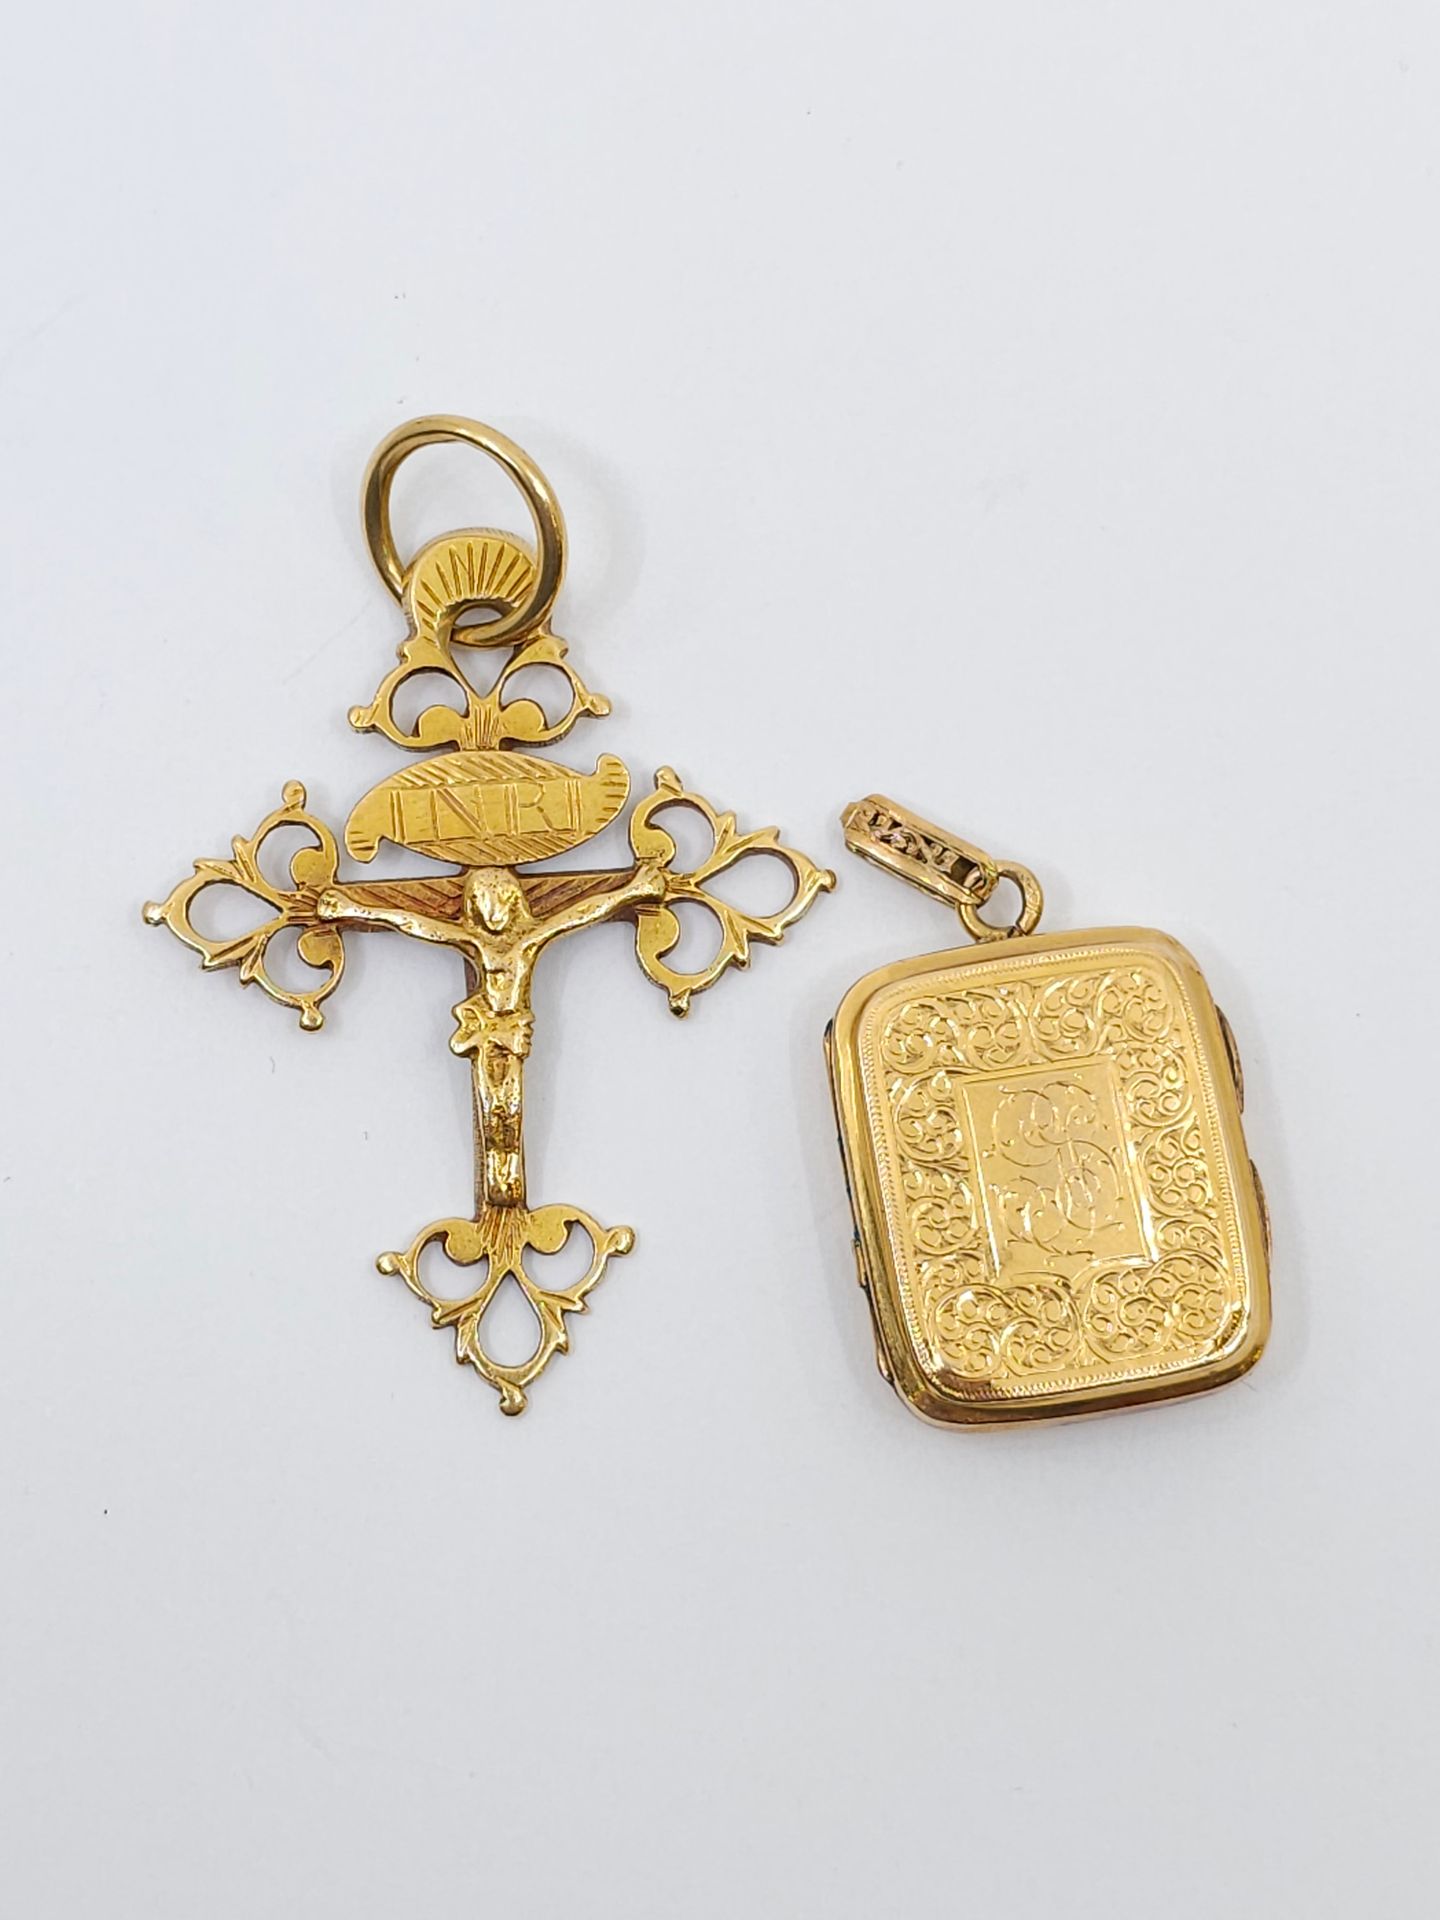 Null LOT aus 750° Gold bestehend aus :
Kreuz aus Gold 
Anhänger mit Erinnerungss&hellip;